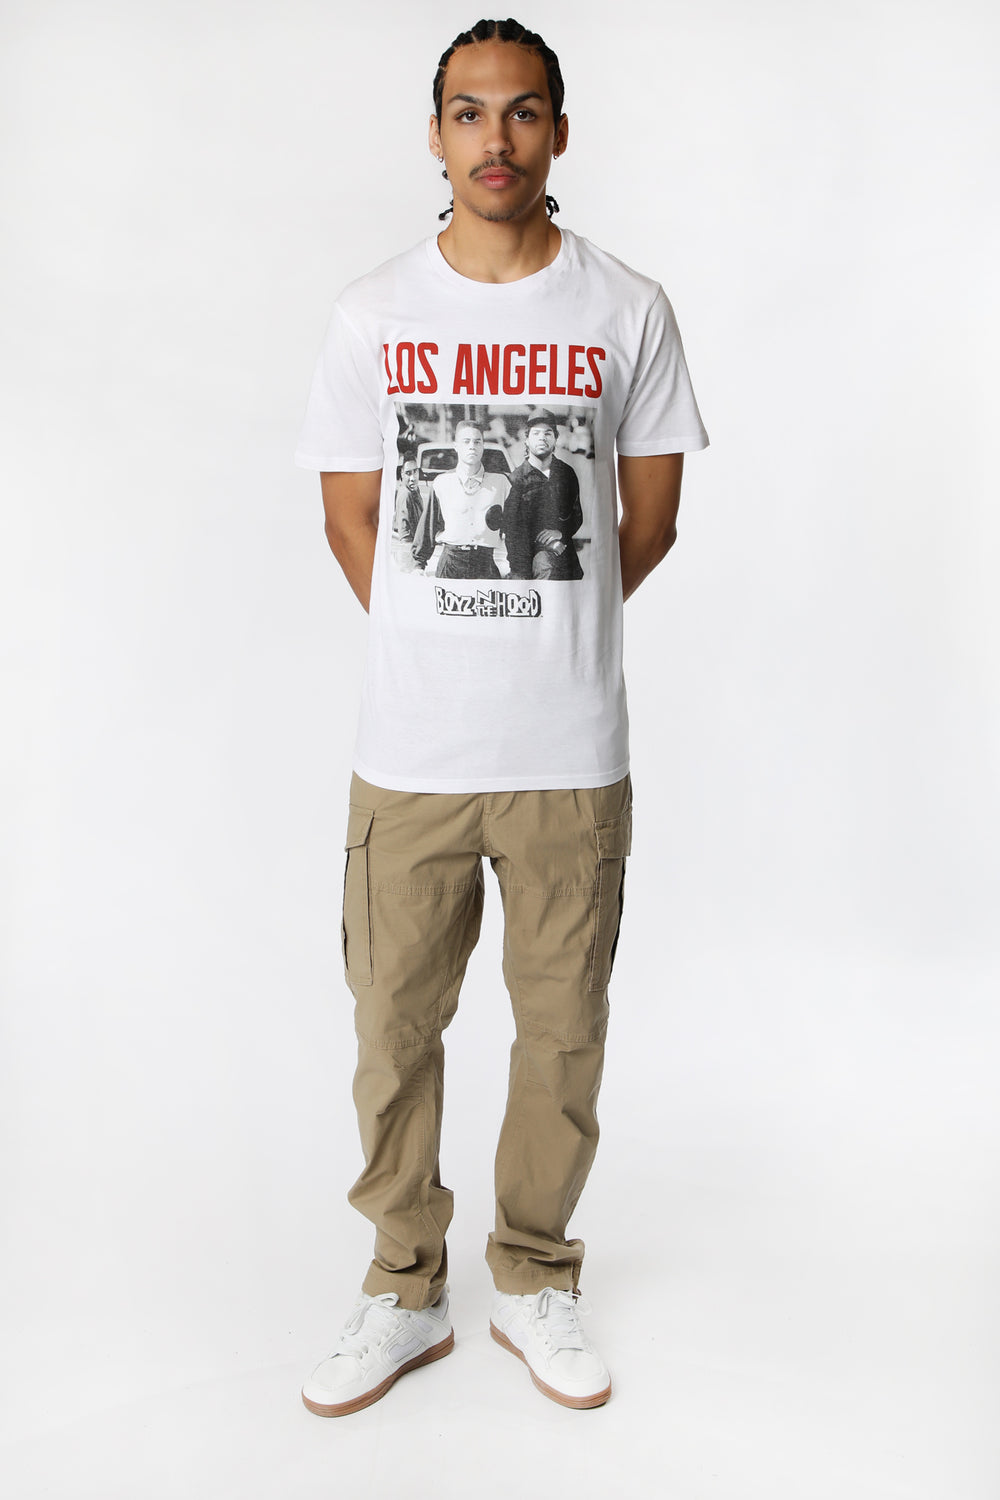 Mens Boyz N The Hood Los Angeles T-Shirt Mens Boyz N The Hood Los Angeles T-Shirt